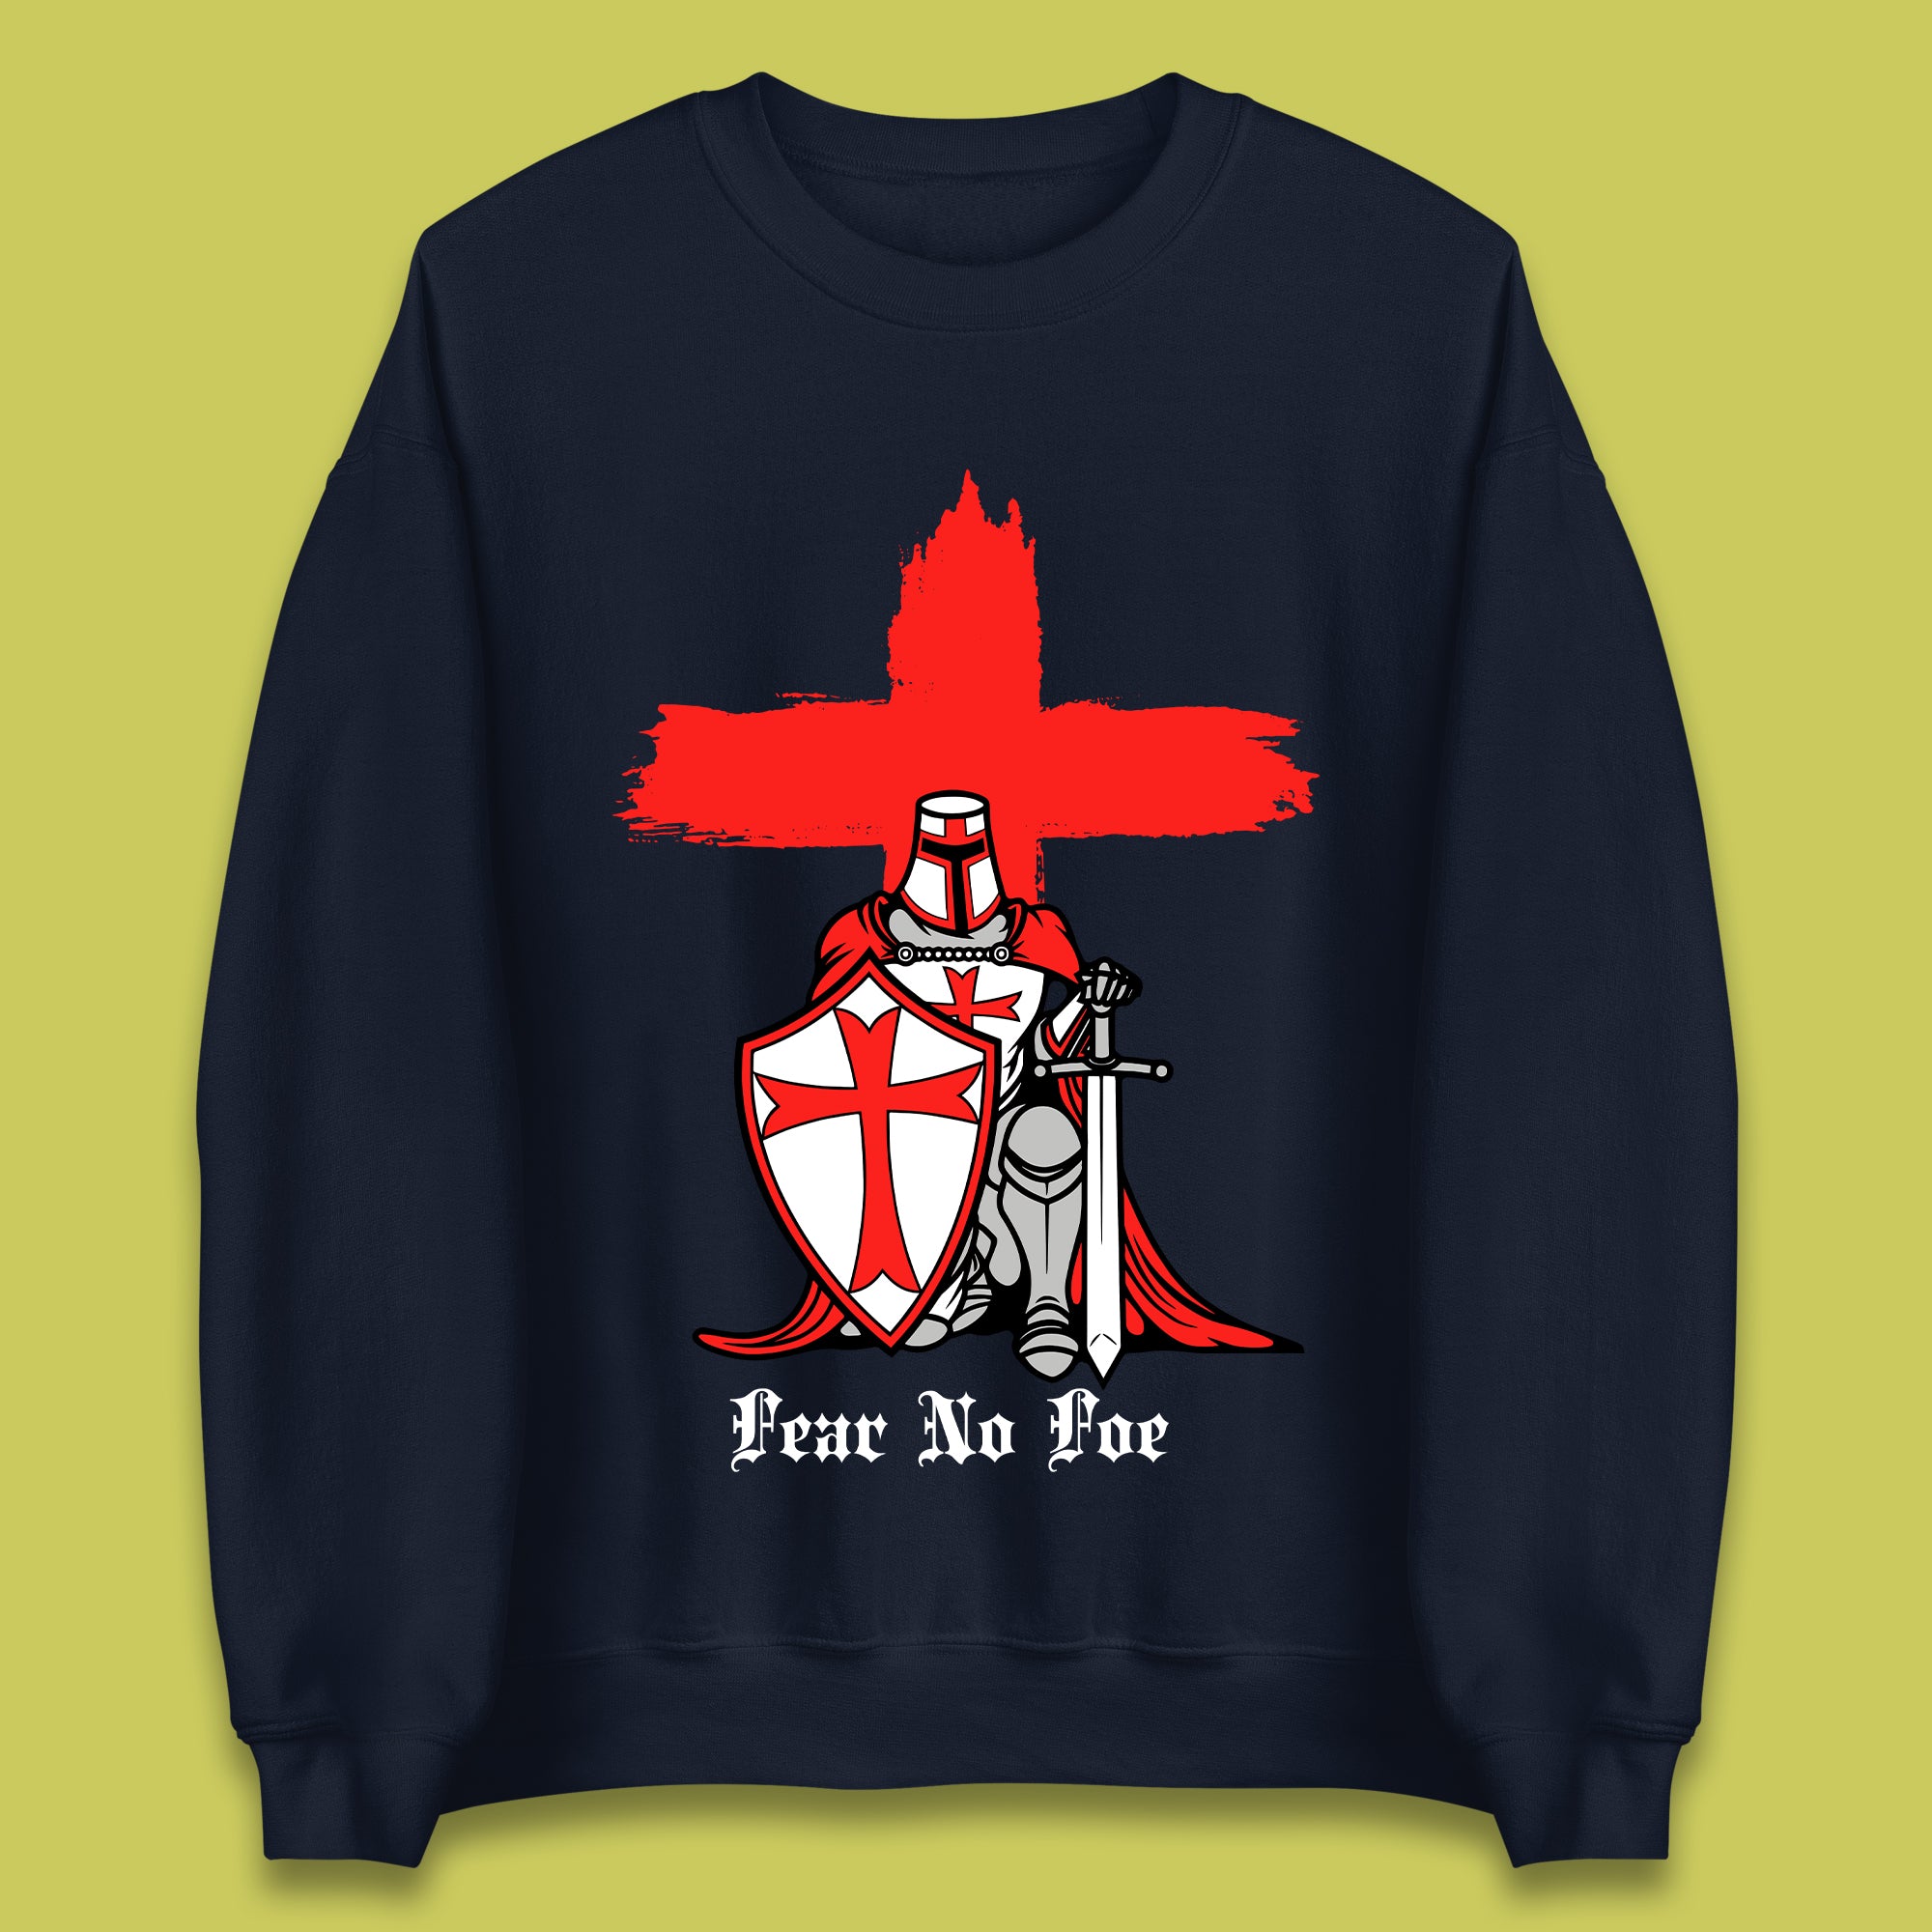 Fear No Foe St George's Day Unisex Sweatshirt